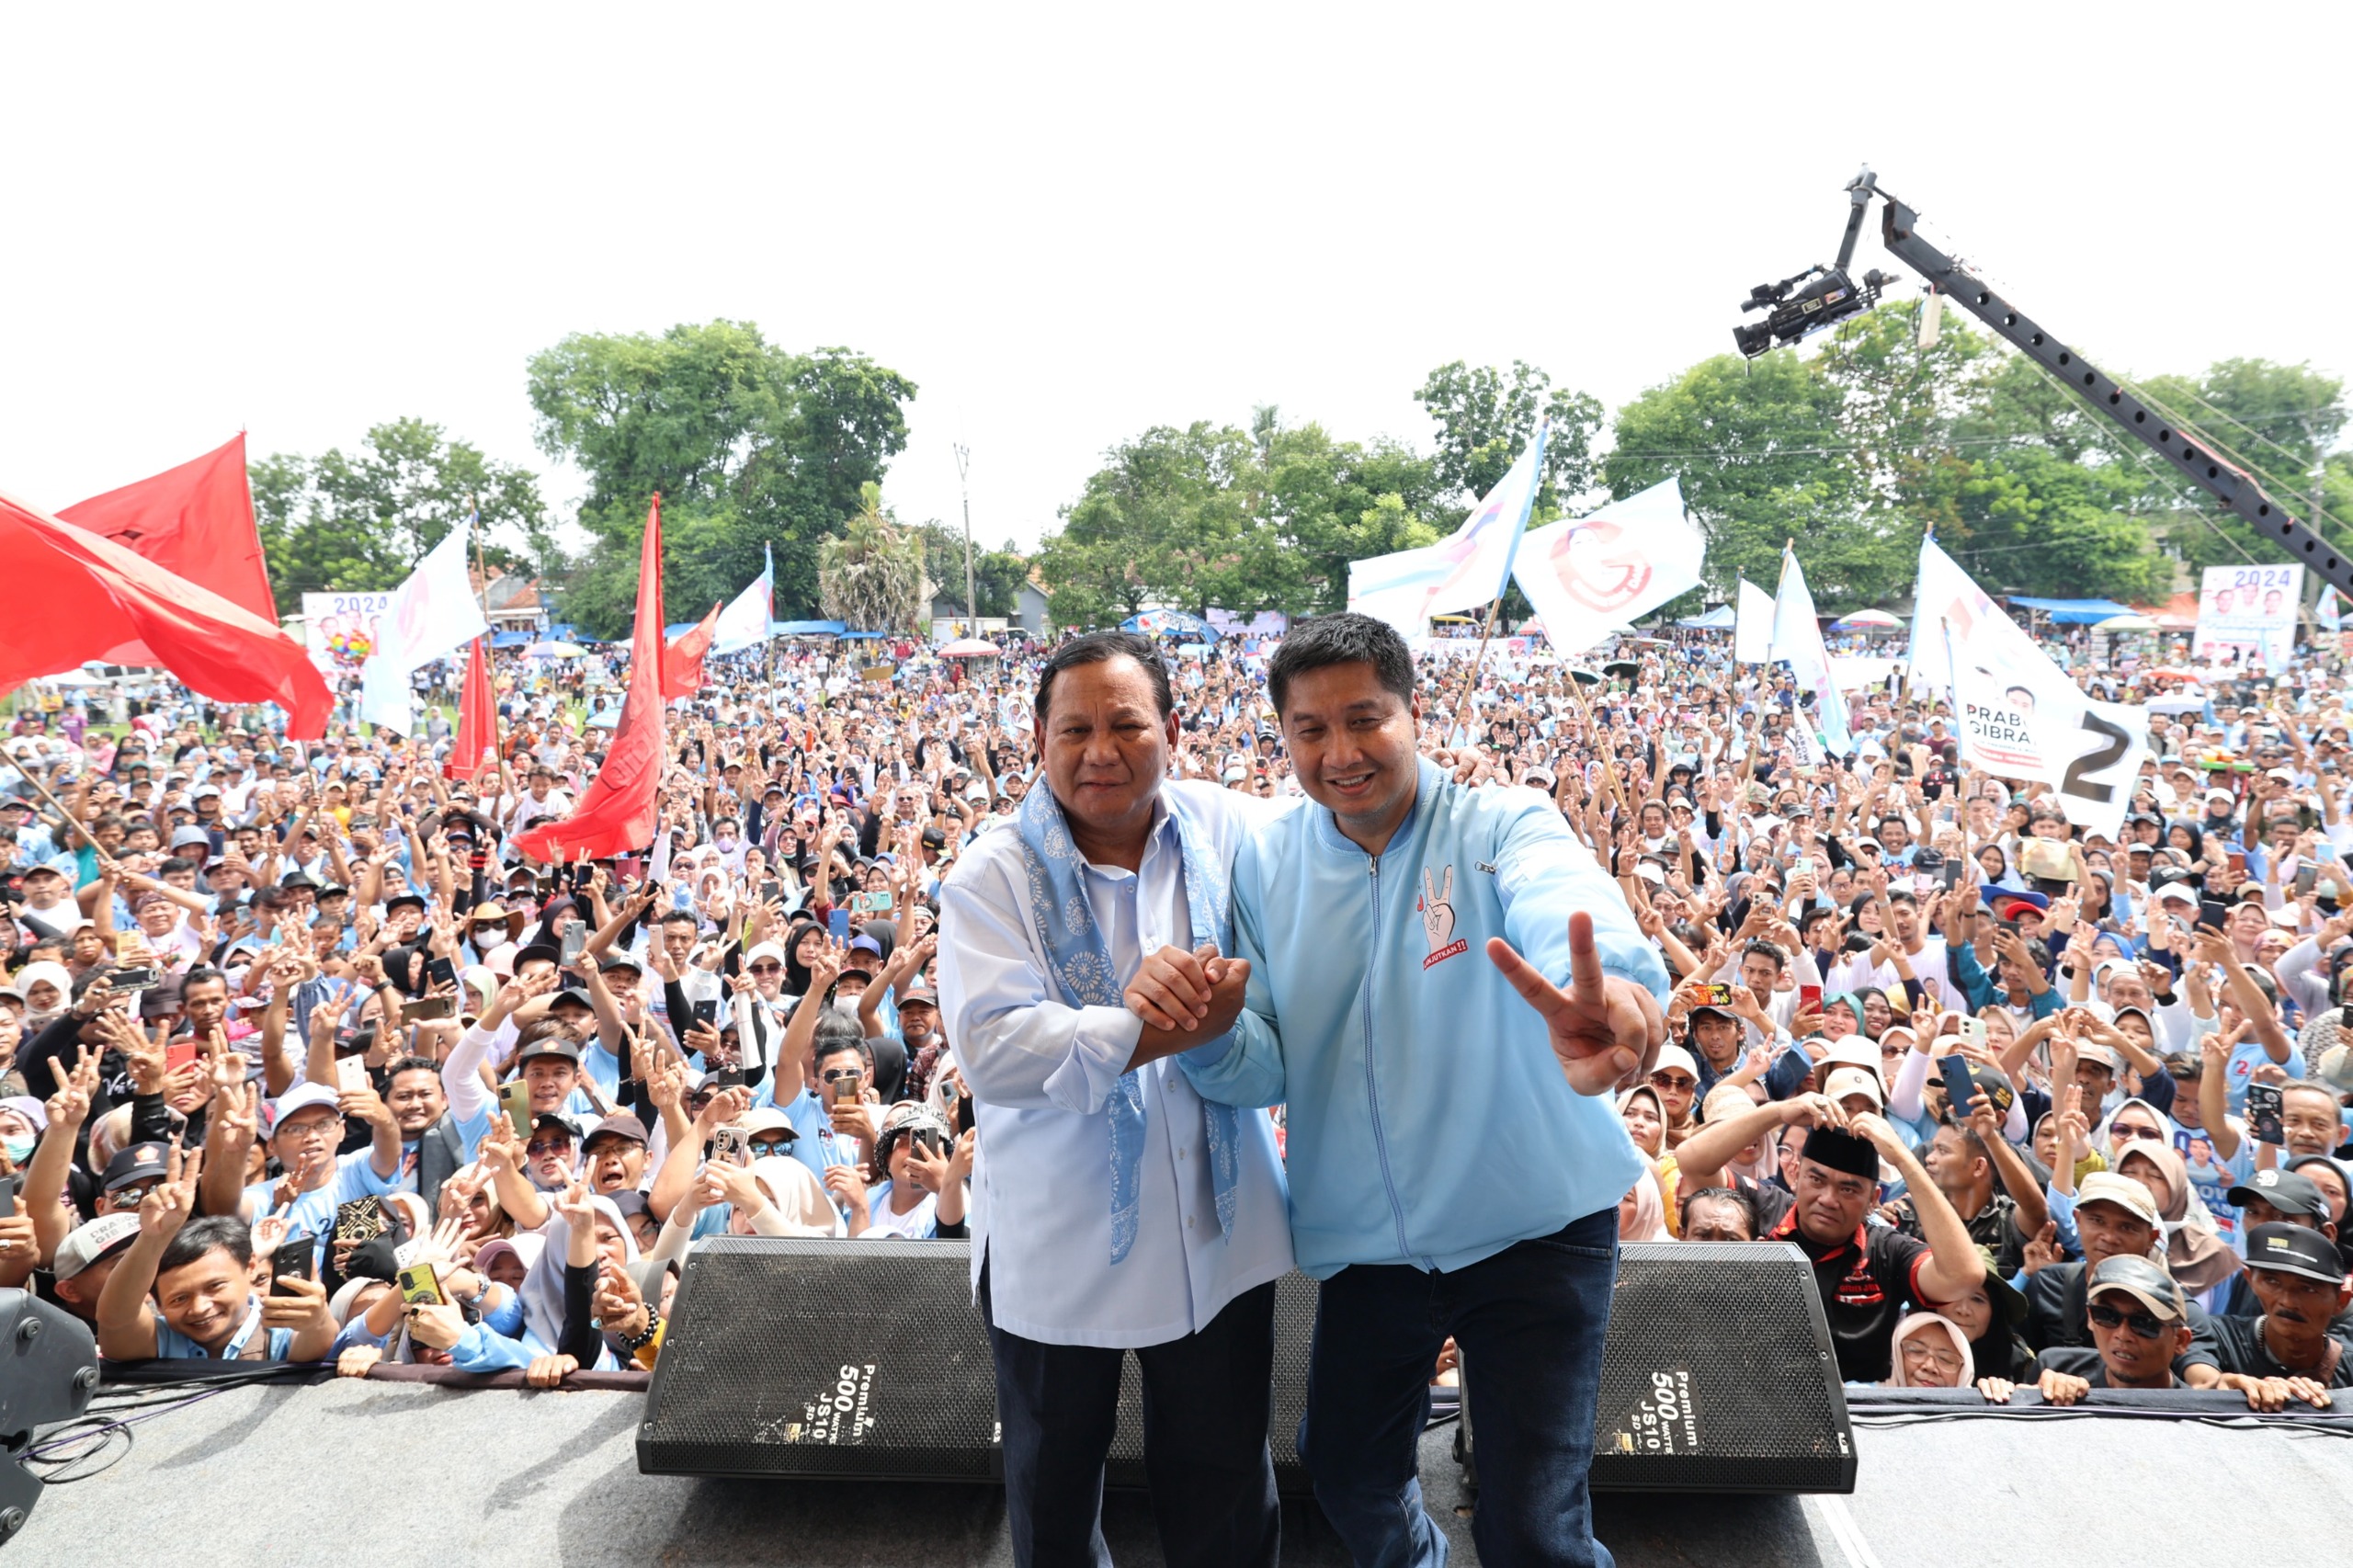 Maruarar Sirait Tampil di Acara Konsolidasi Dukungan Prabowo: Jokowi dan Prabowo Adalah Teladan Kerukunan